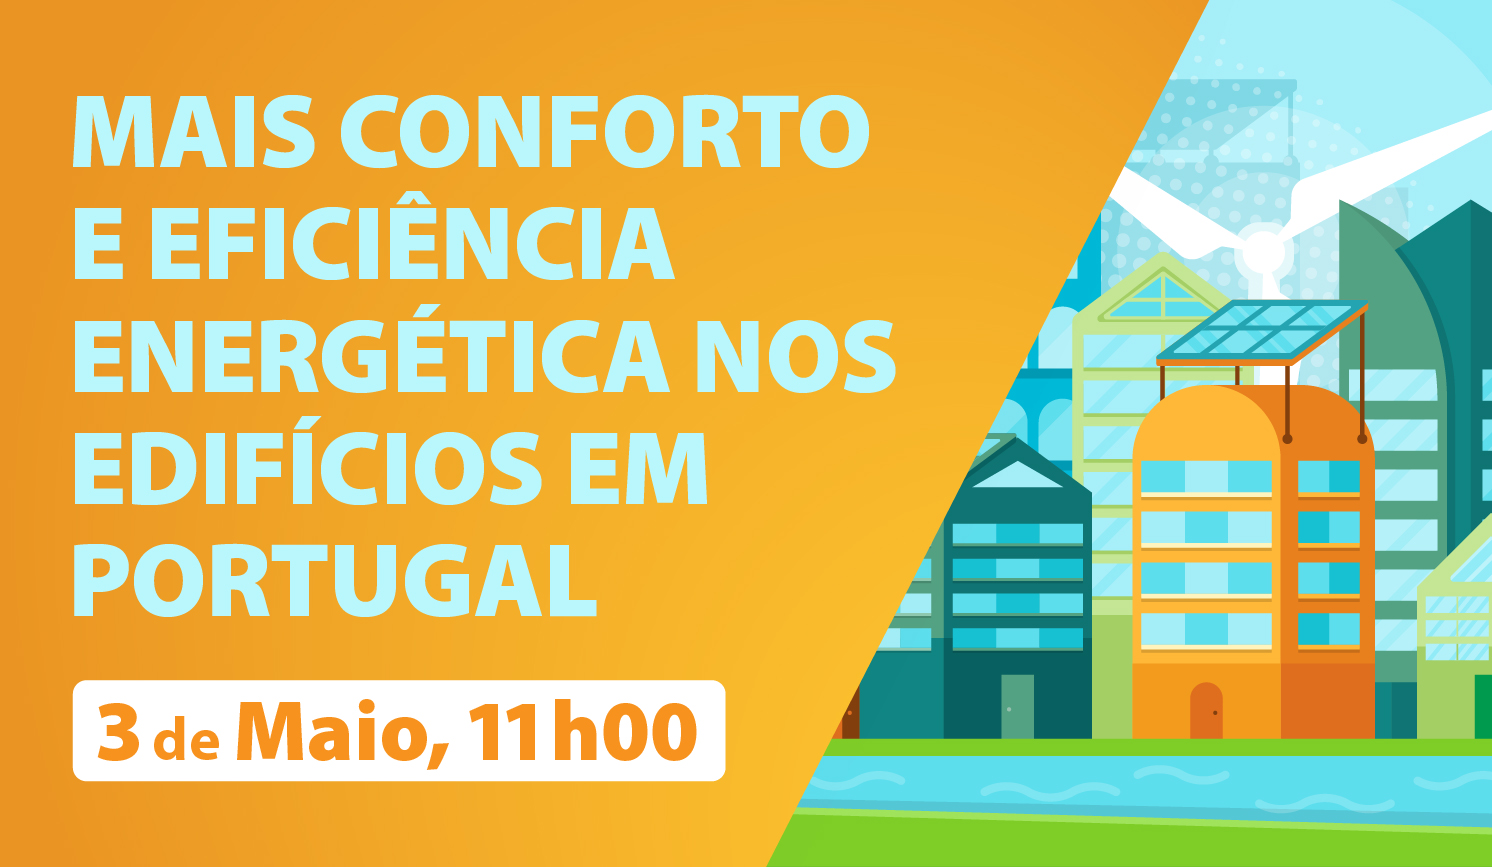 Mesa-redonda «Mais conforto e eficiência energética nos edifícios em Portugal», na Tektónica